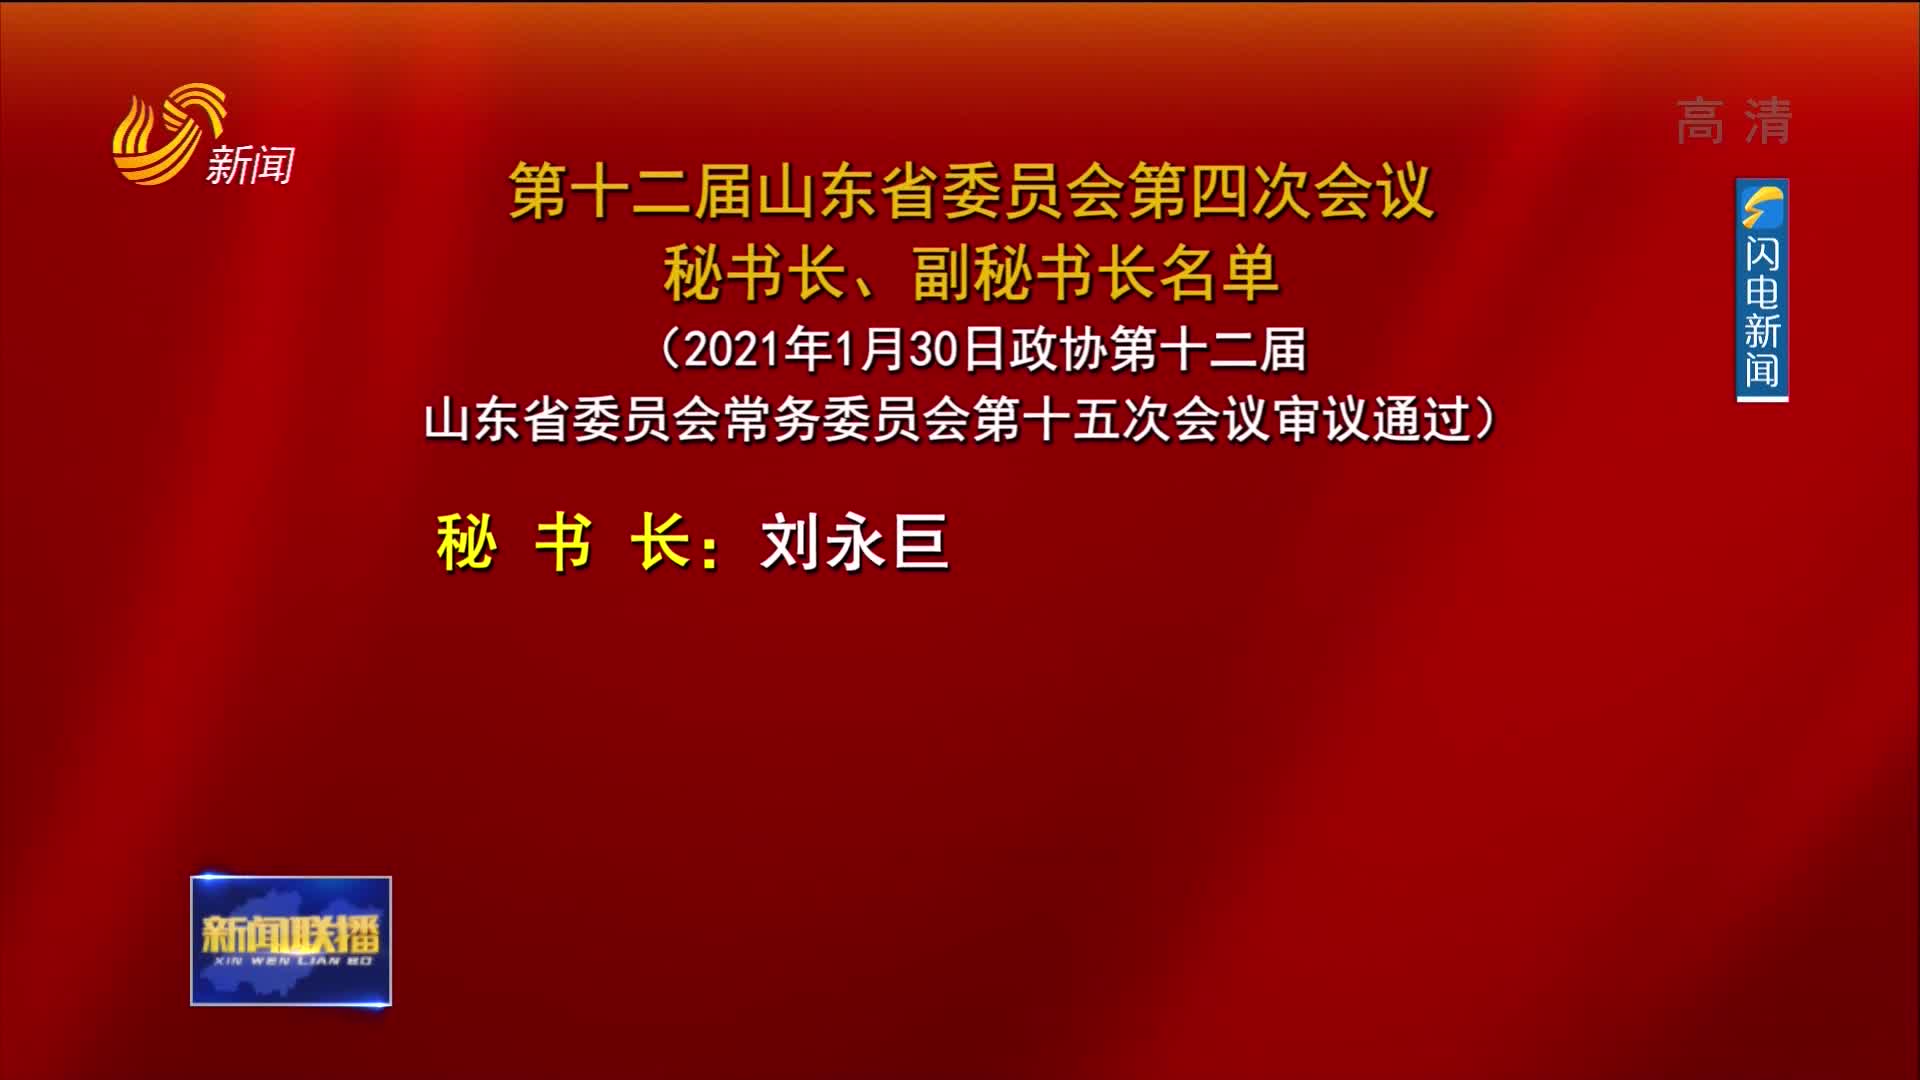 中国人民政治协商会议第十二届山东省委员会第四次会议秘书长、副秘书长名单